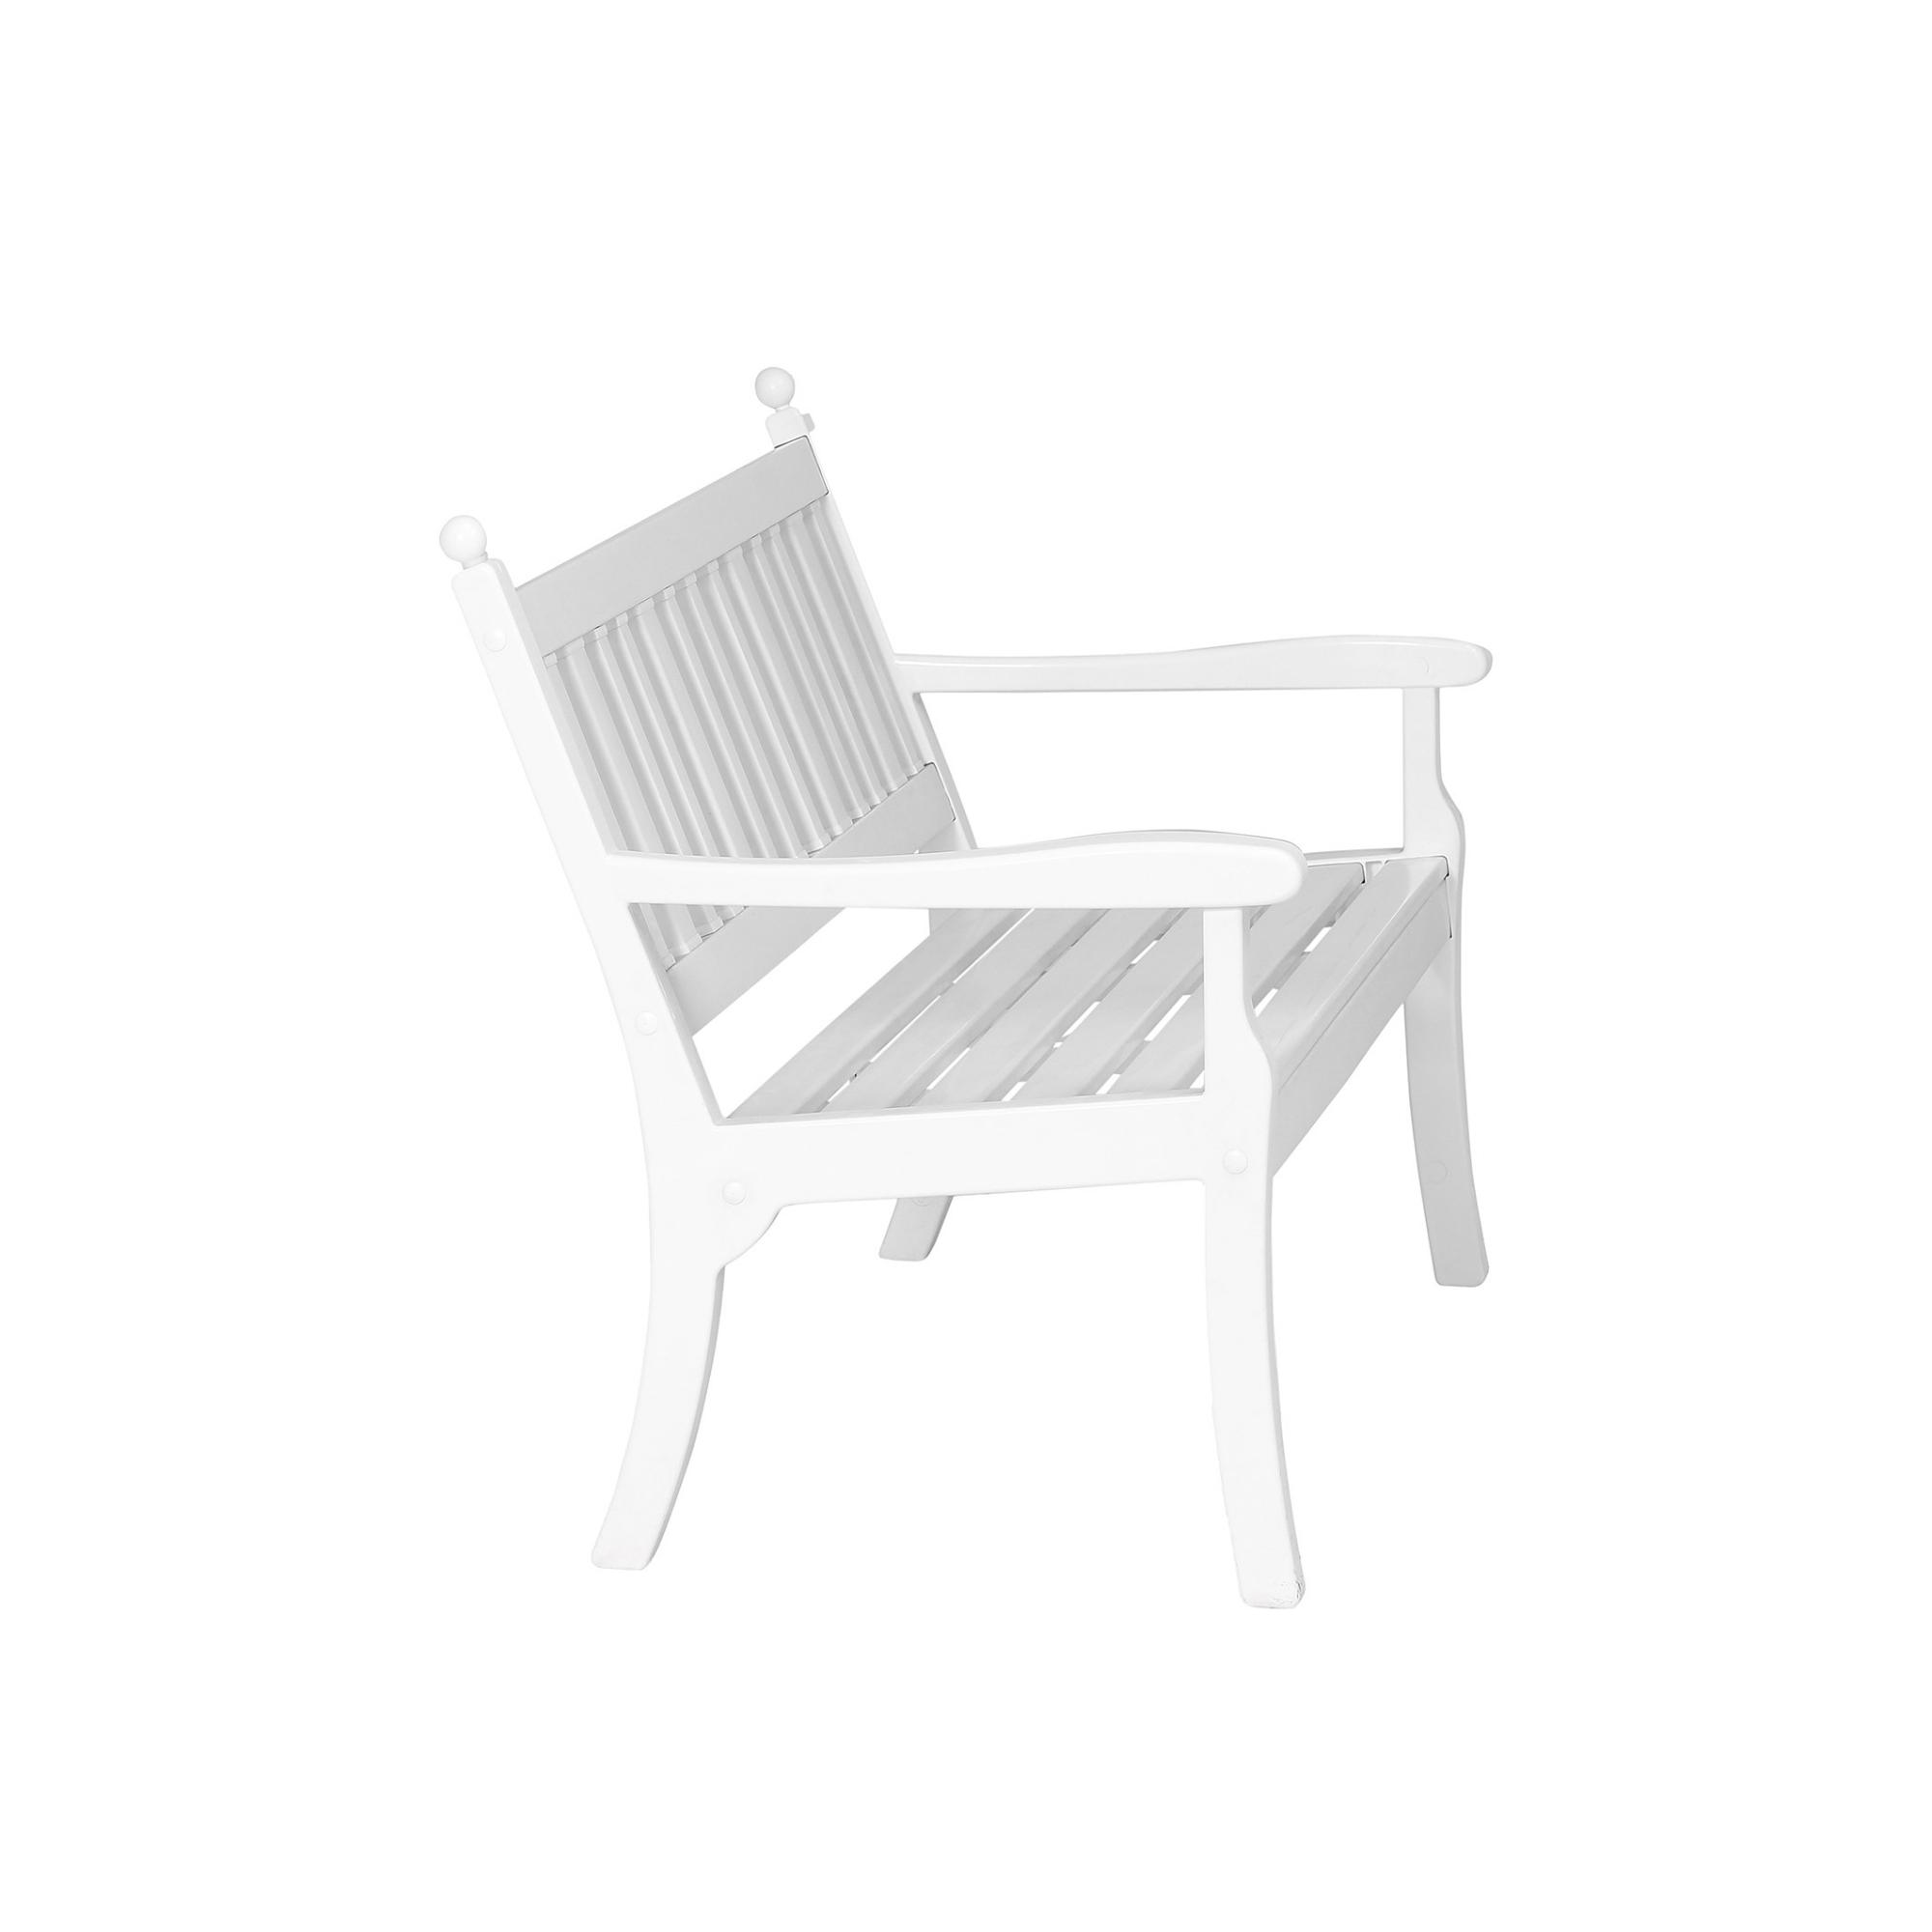 Gartenbank Aruba | 2-Sitzer | Weiß | HxBxT 88x115x69cm | Witterungs- & UV-beständiger Kunststoff | Parkbank Sitzbank Außenbereich Garten Balkon Terrasse